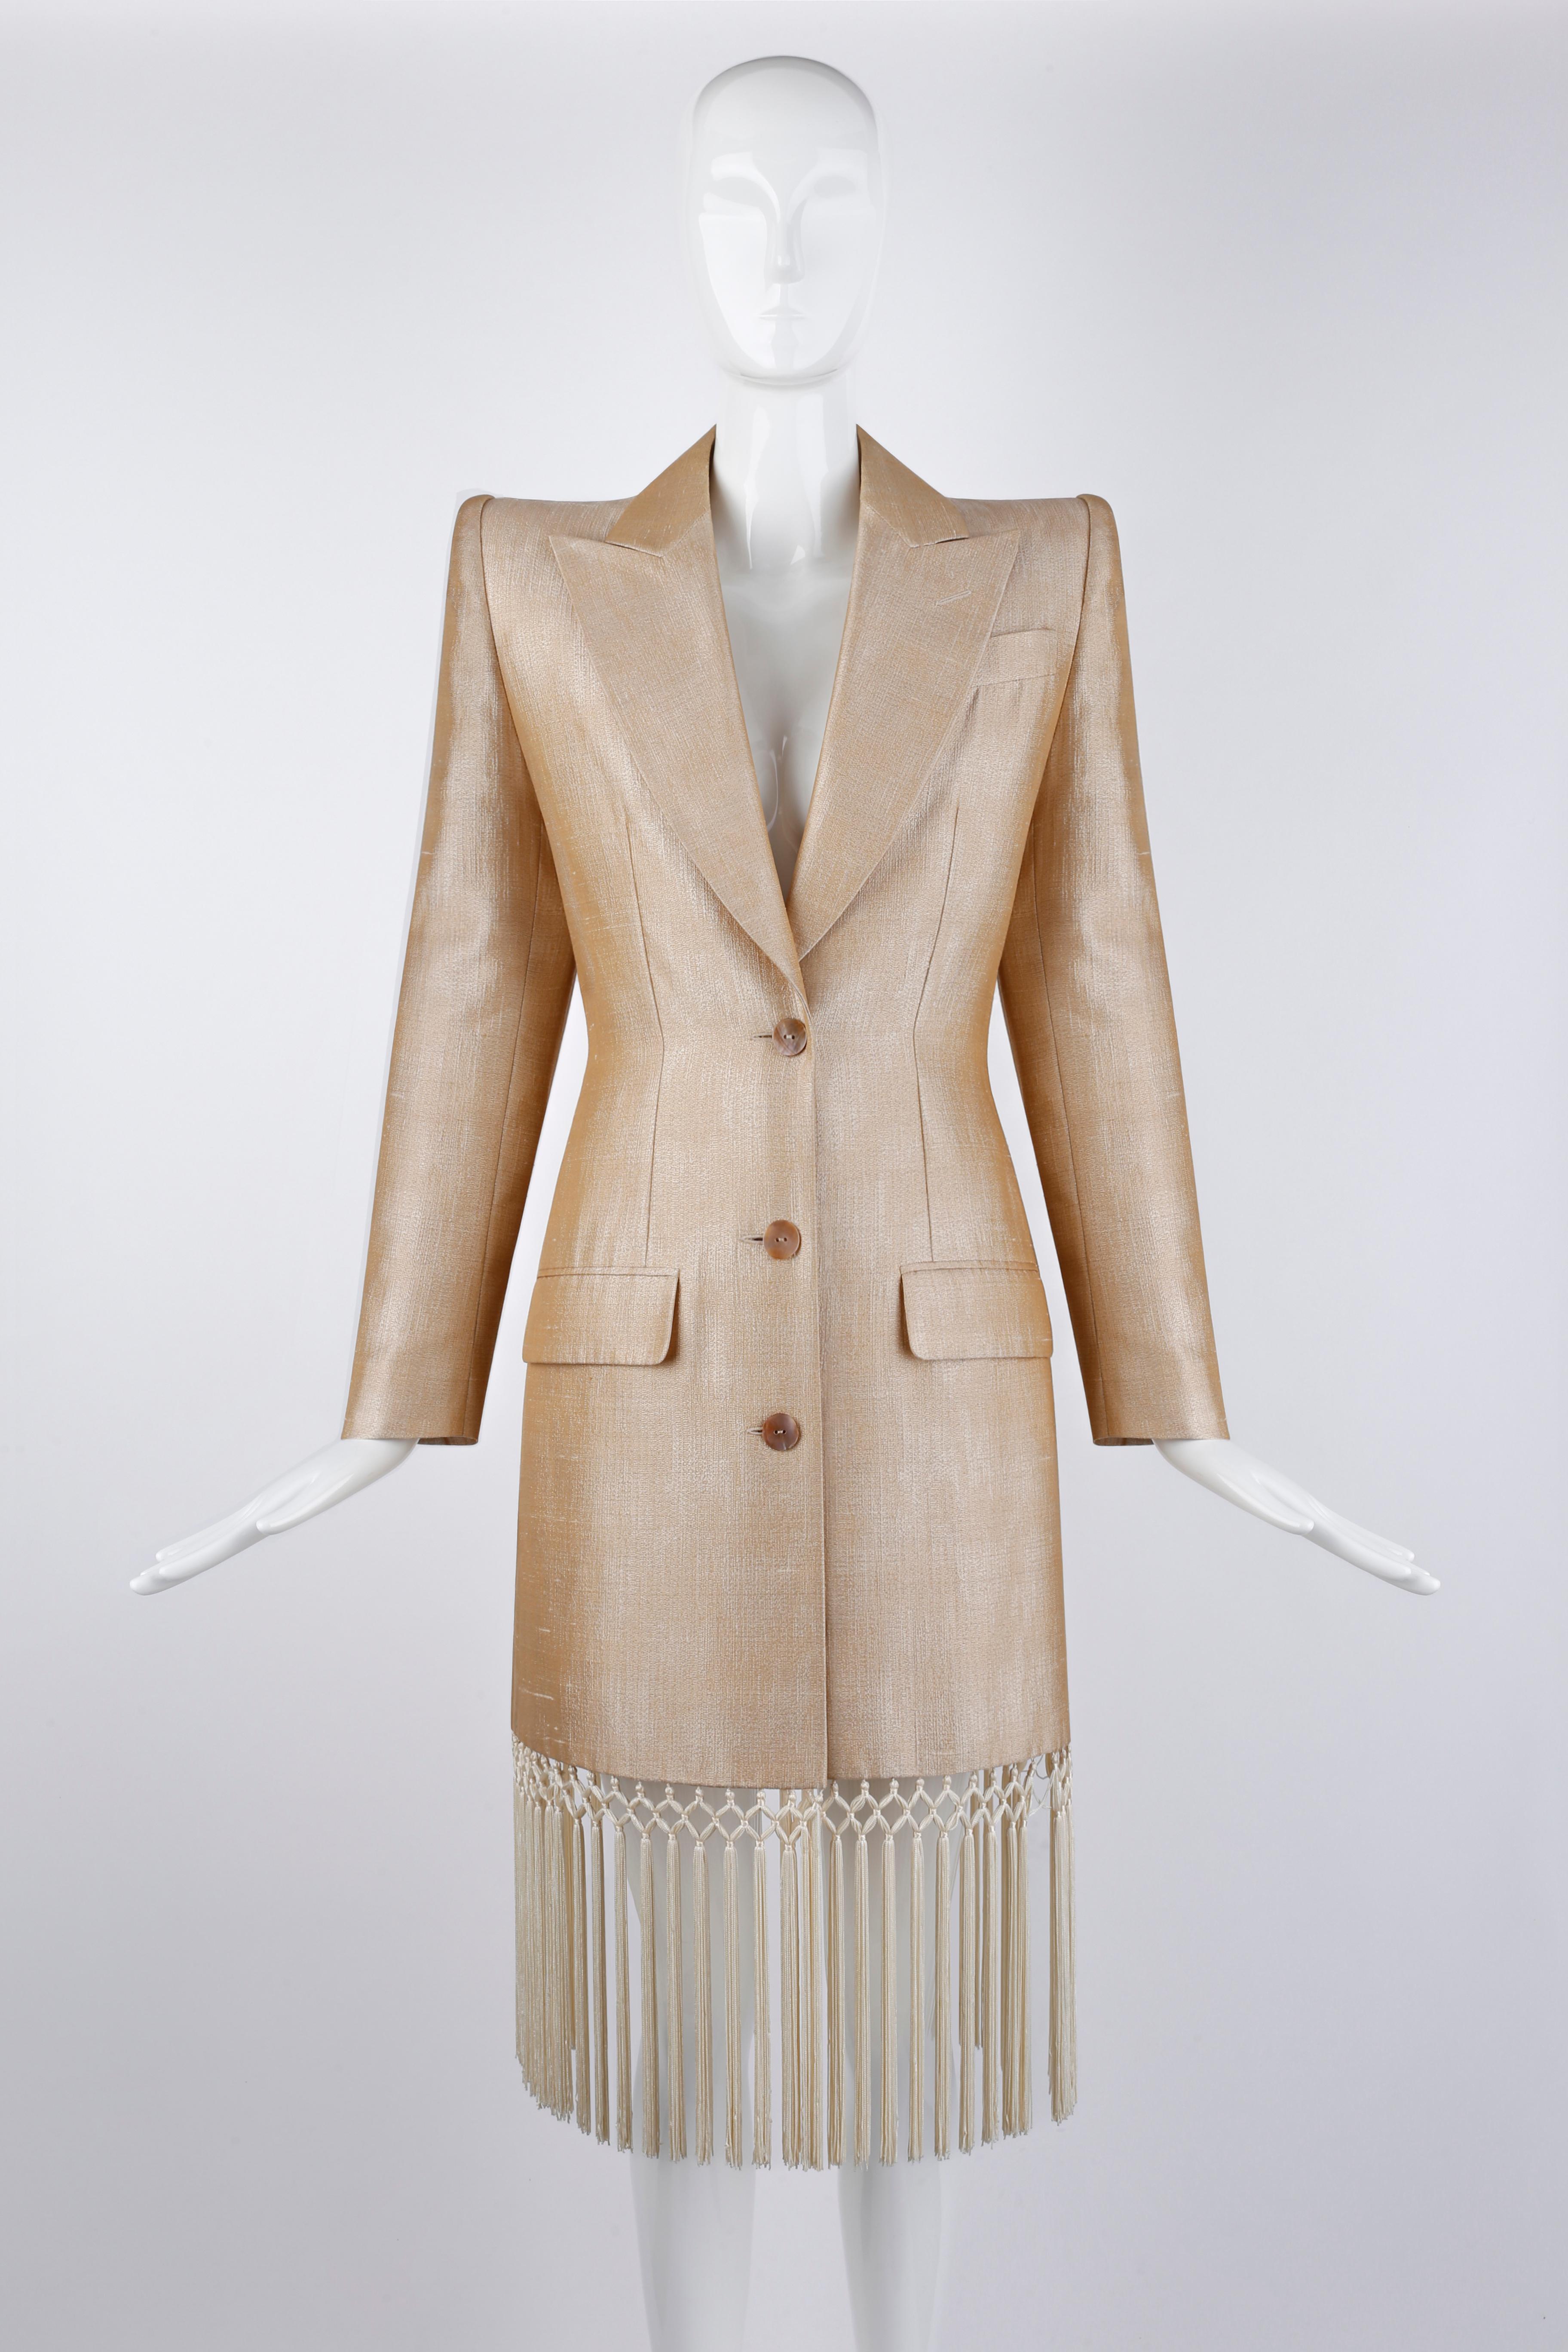 Conçue par Alexander McQueen pour la collection Givenchy Couture printemps/été 1998. Cette rare robe-manteau présente de nombreux pompons ornant l'ensemble de l'ourlet. Épaules structurées et coupe ajustée. La matière en mélange de soie permet